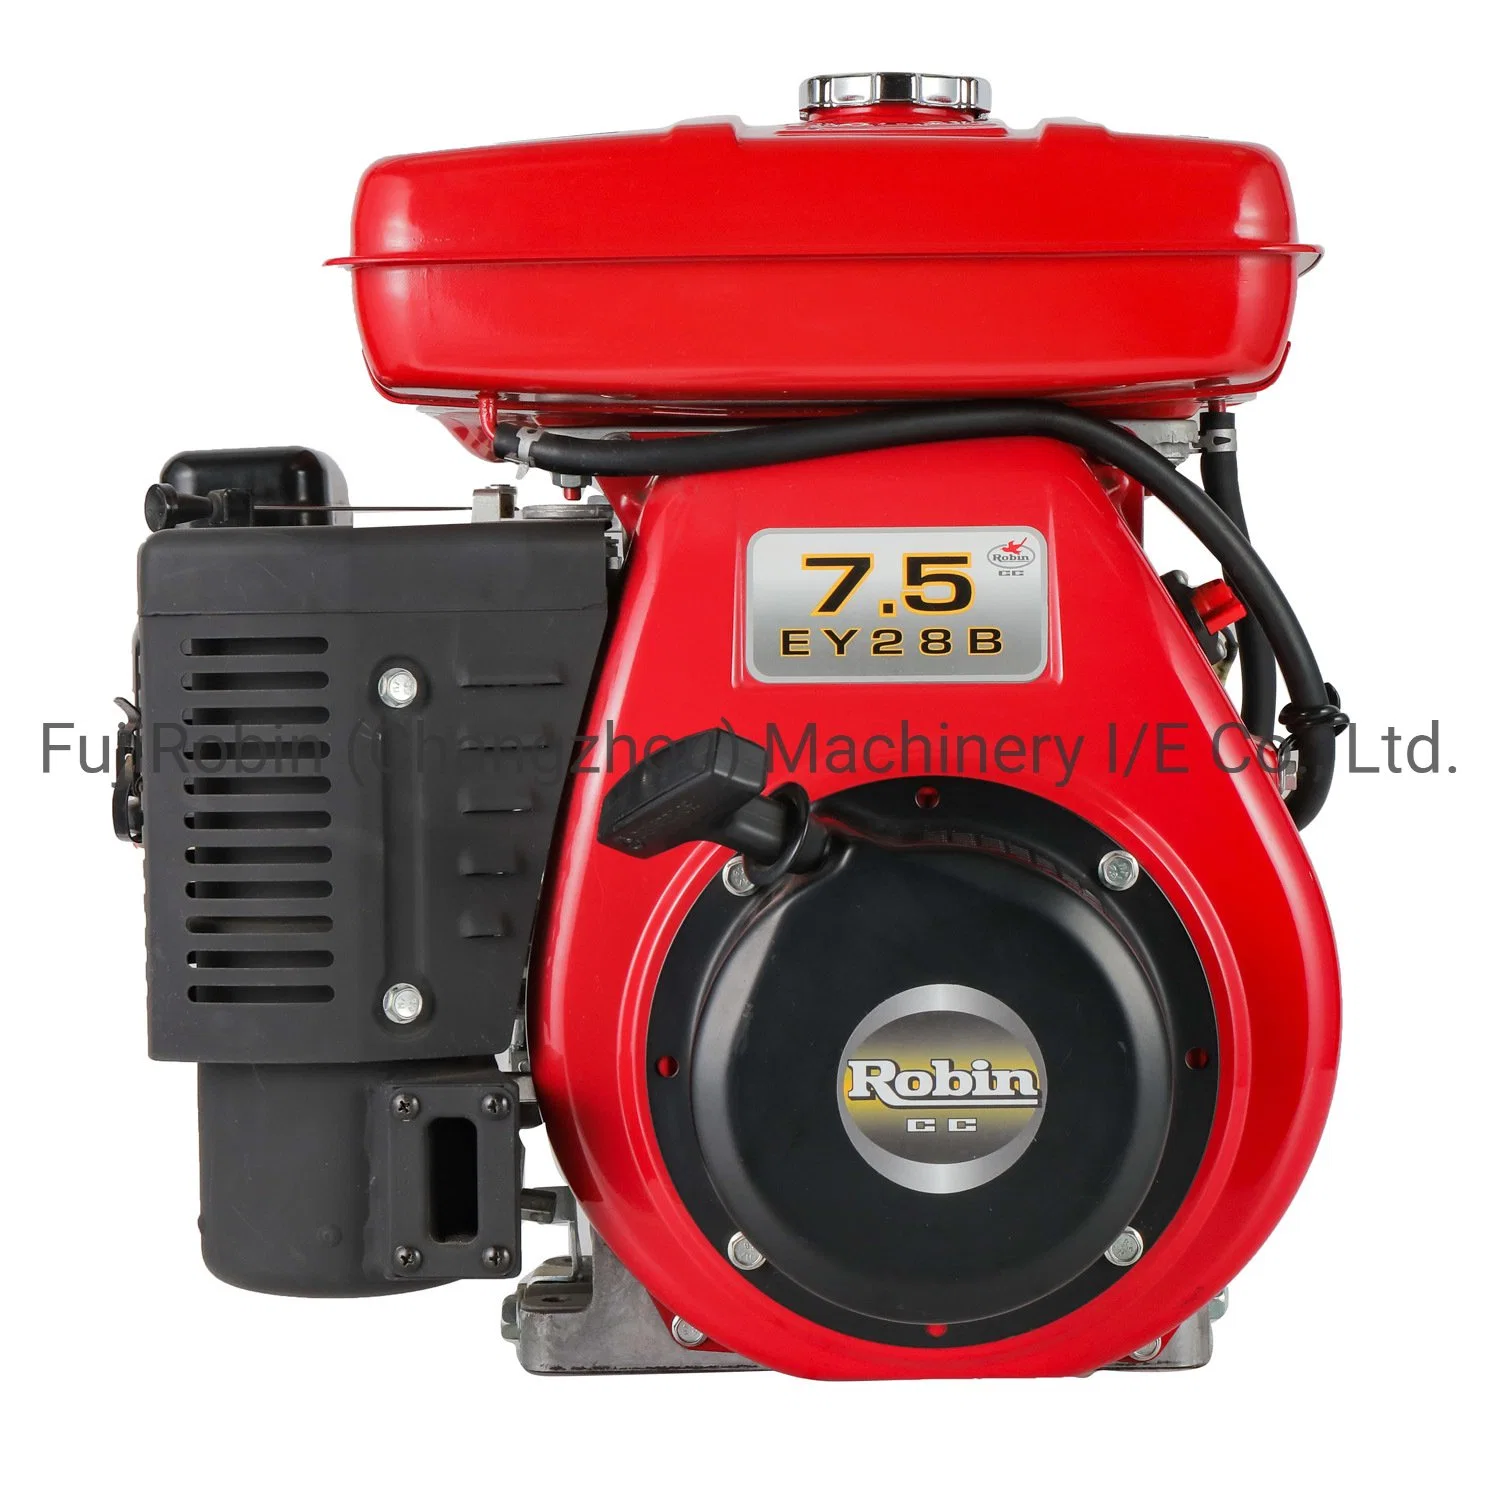 Бензиновый двигатель Robin Air с воздушным охлаждением (цвет Red), 8 л.с., Ey28b/D. Робин, бензиновый двигатель